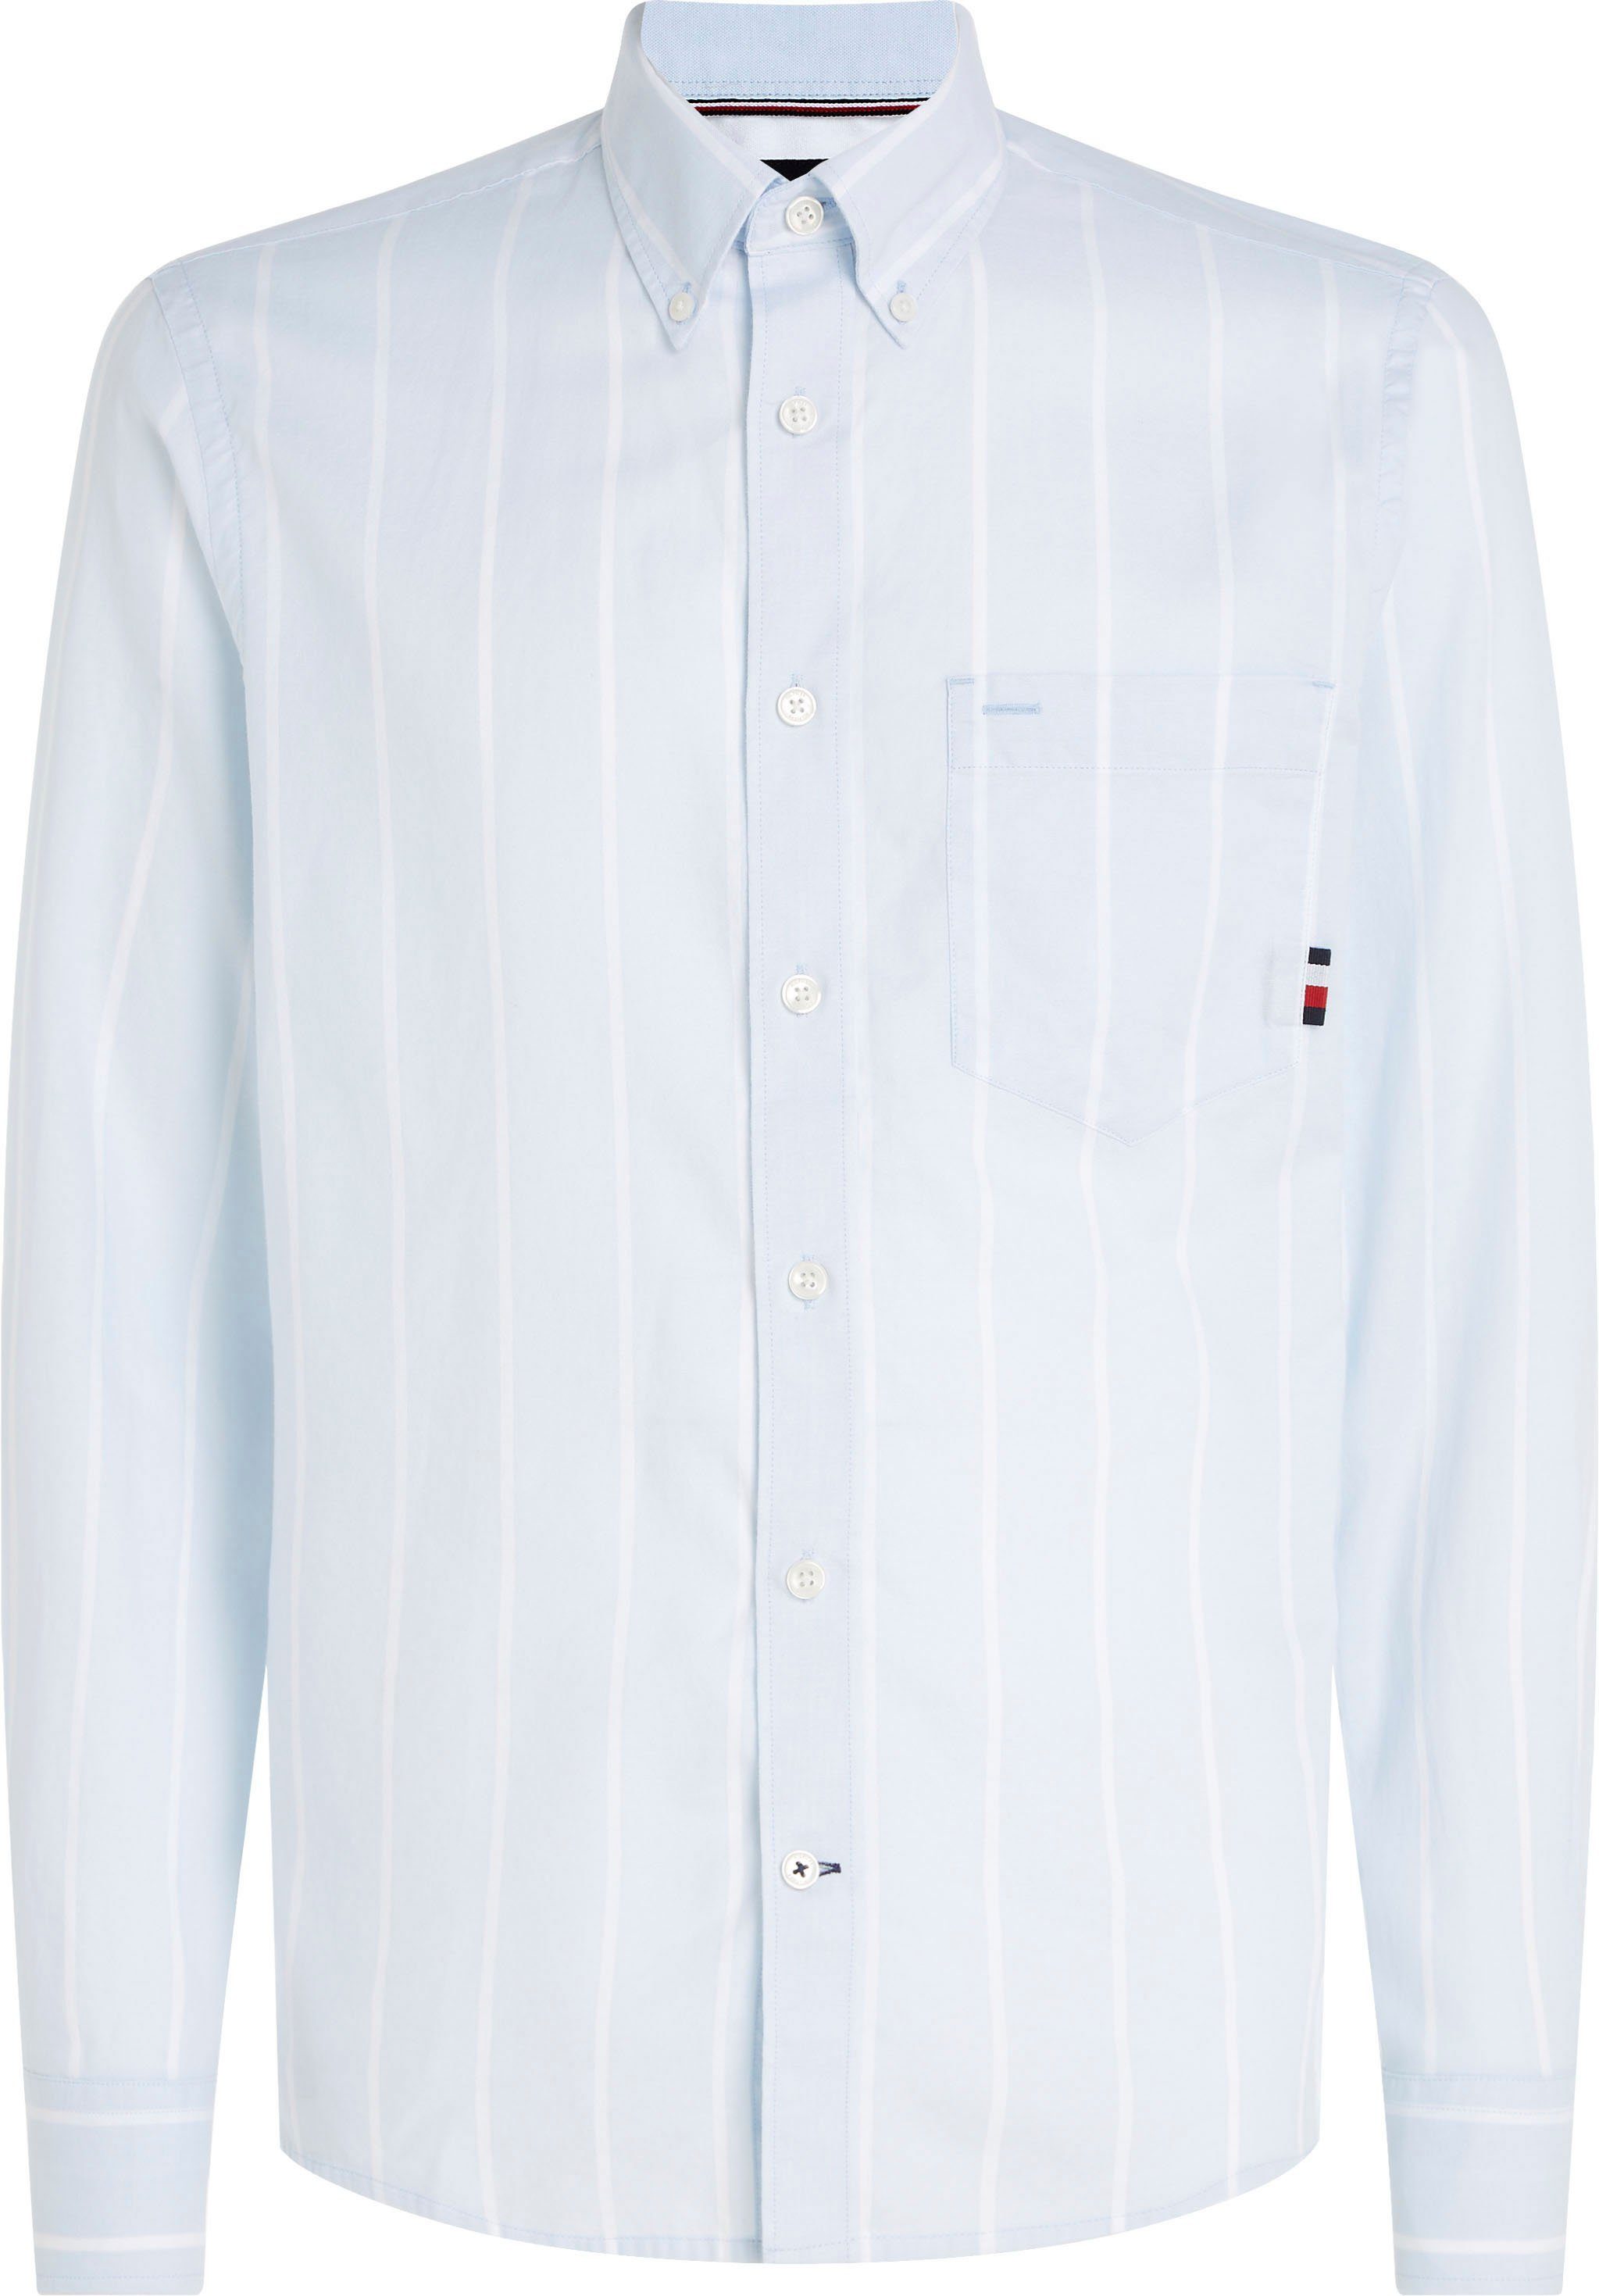 RF STRIPE Blue/Optic Hilfiger Langarmhemd OXFORD White Button-down-Kragen mit Tommy SHIRT Breezy